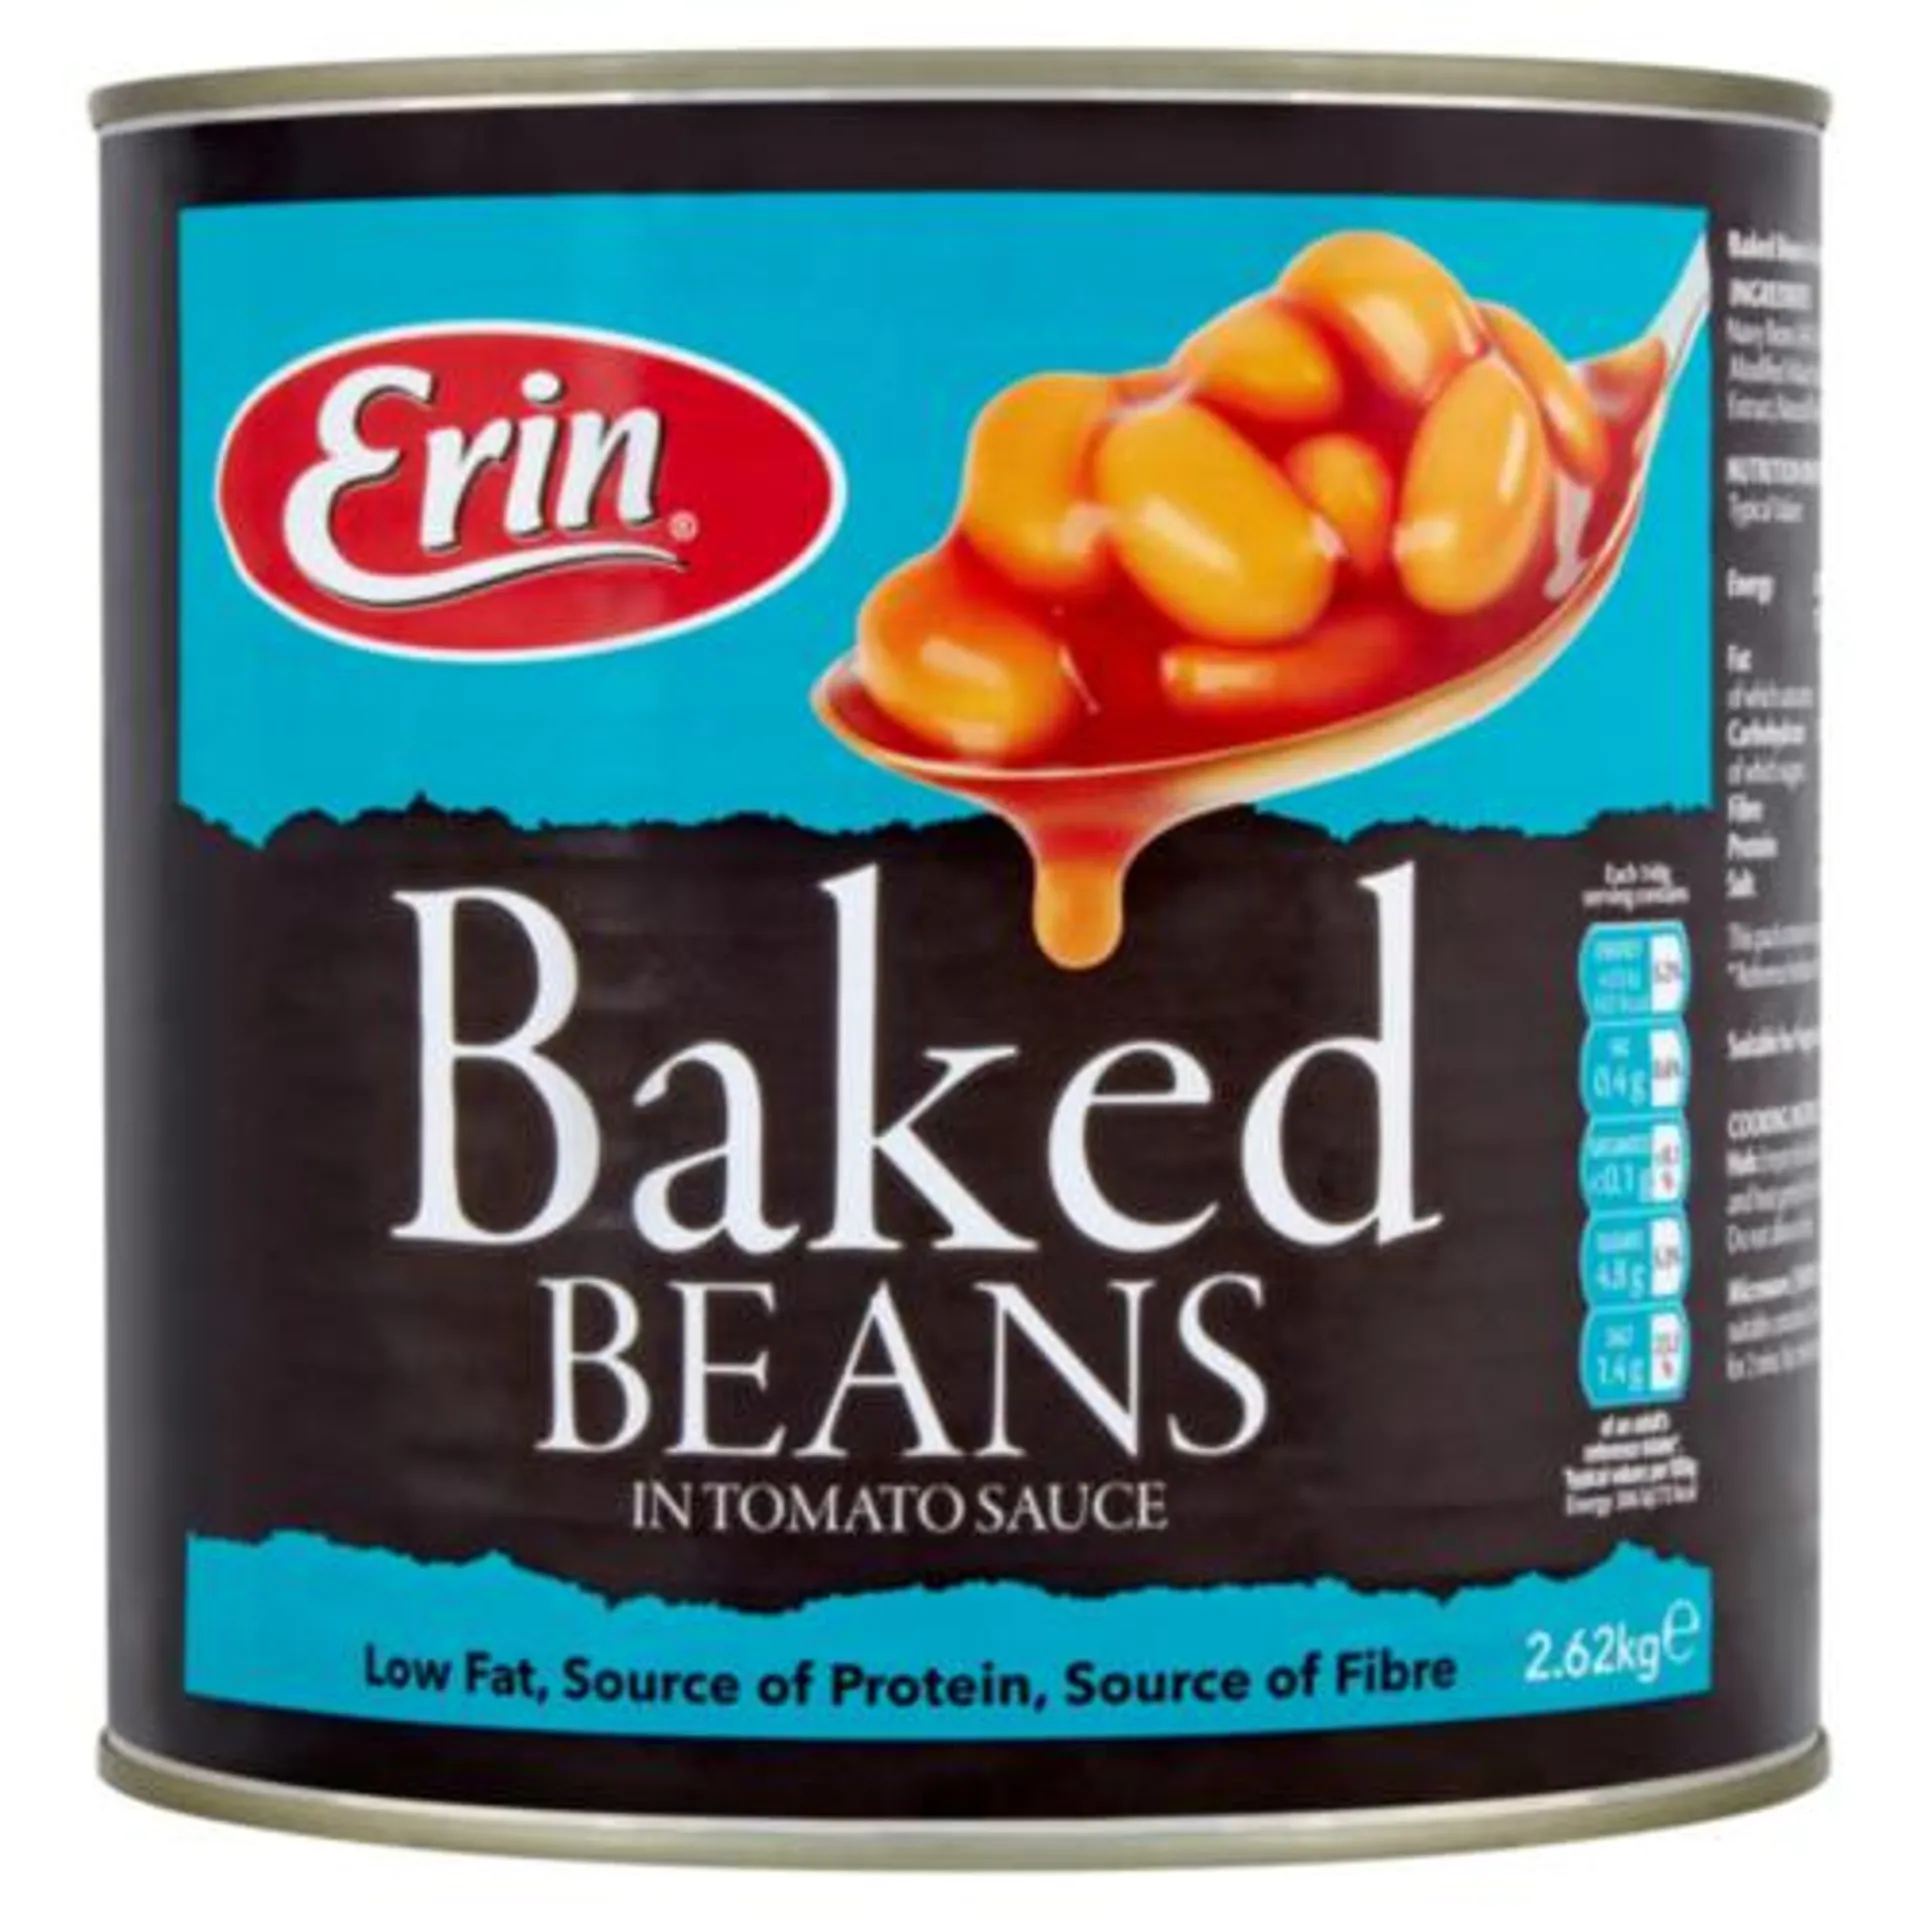 Erin Baked Beans